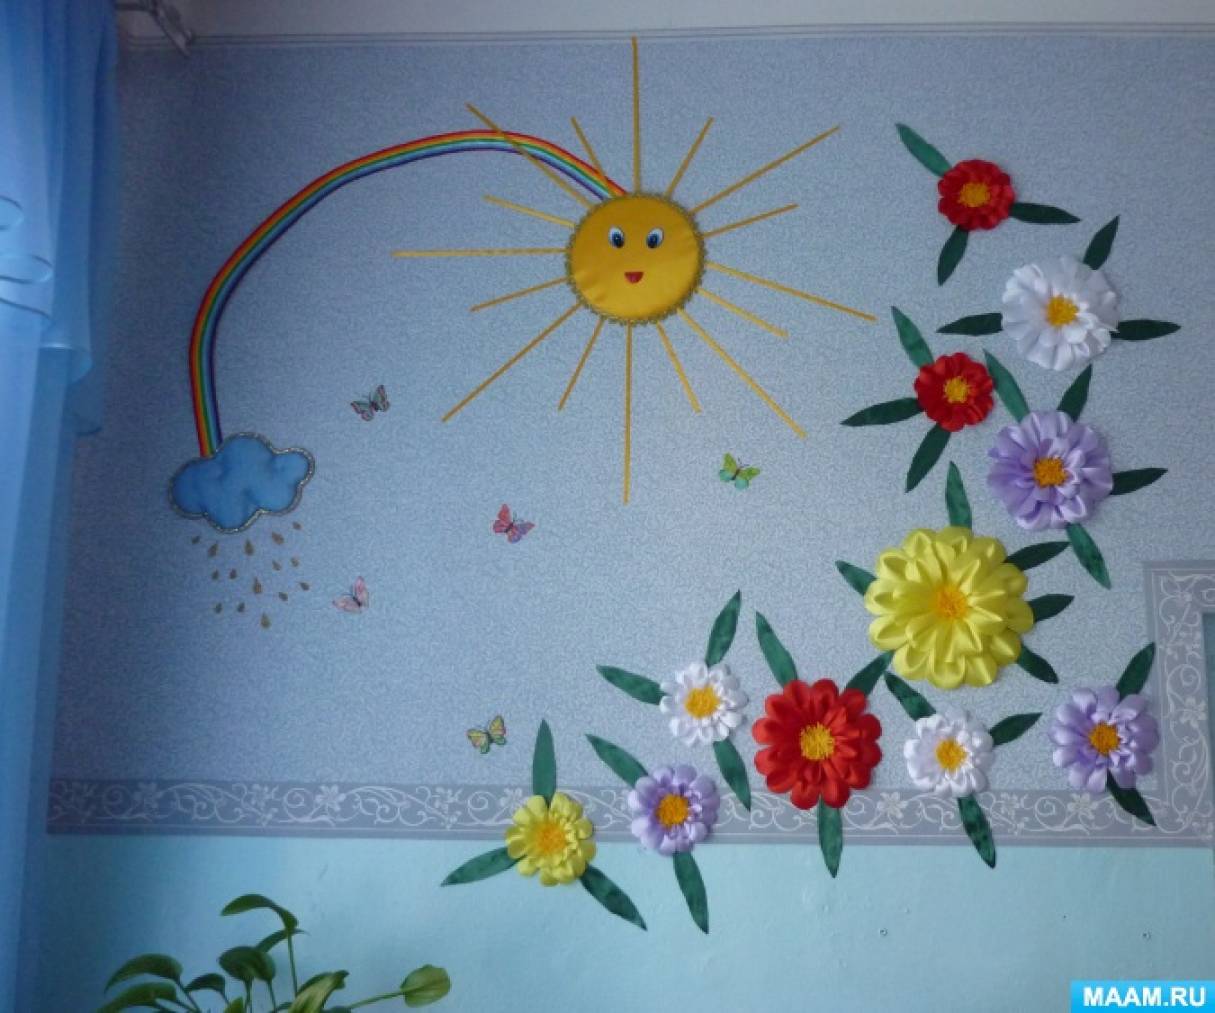 Картина «Летний день» из атласных лент | Творческие проекты и работы учащихся